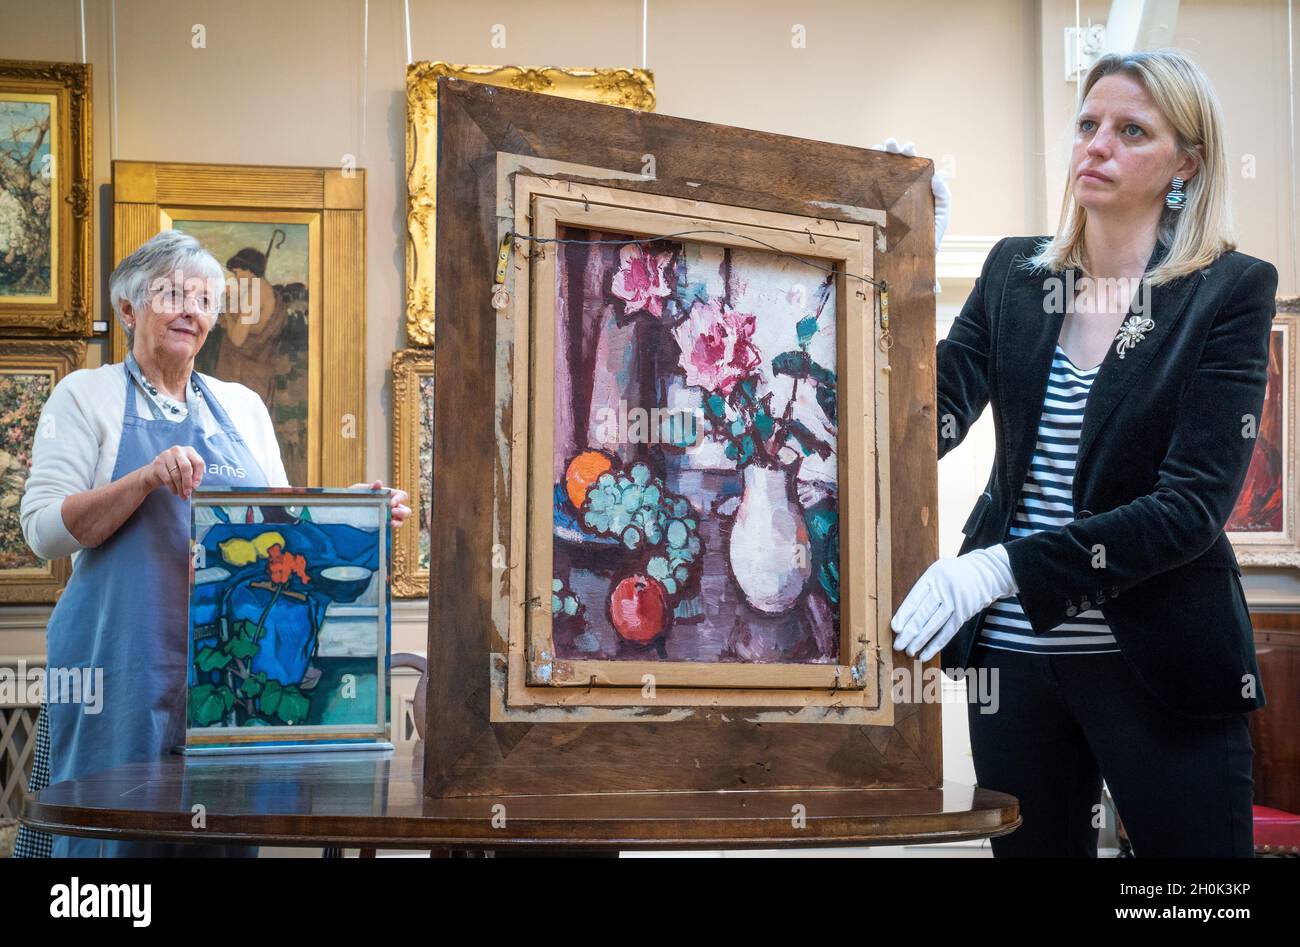 May Matthews (à droite) de Bonhams montre 'la vie de till avec des roses et des fruits' par Samual John Paploe qui est à l'inverse de la toile double-face 'la vie de till avec Geranium' (vers 1913) comme vu dans un miroir tenu par Lorna MacGregor (à gauche) lors d'un aperçu de la prochaine vente écossaise chezBonhams à Édimbourg.Les articles de la vente, qui comprennent également des œuvres d'autres artistes écossais Jack Vettriano et James Paterson, sont vendus à l'aide des organismes de bienfaisance Amnesty International et médecins sans frontières.Date de la photo: Mercredi 13 octobre 2021. Banque D'Images